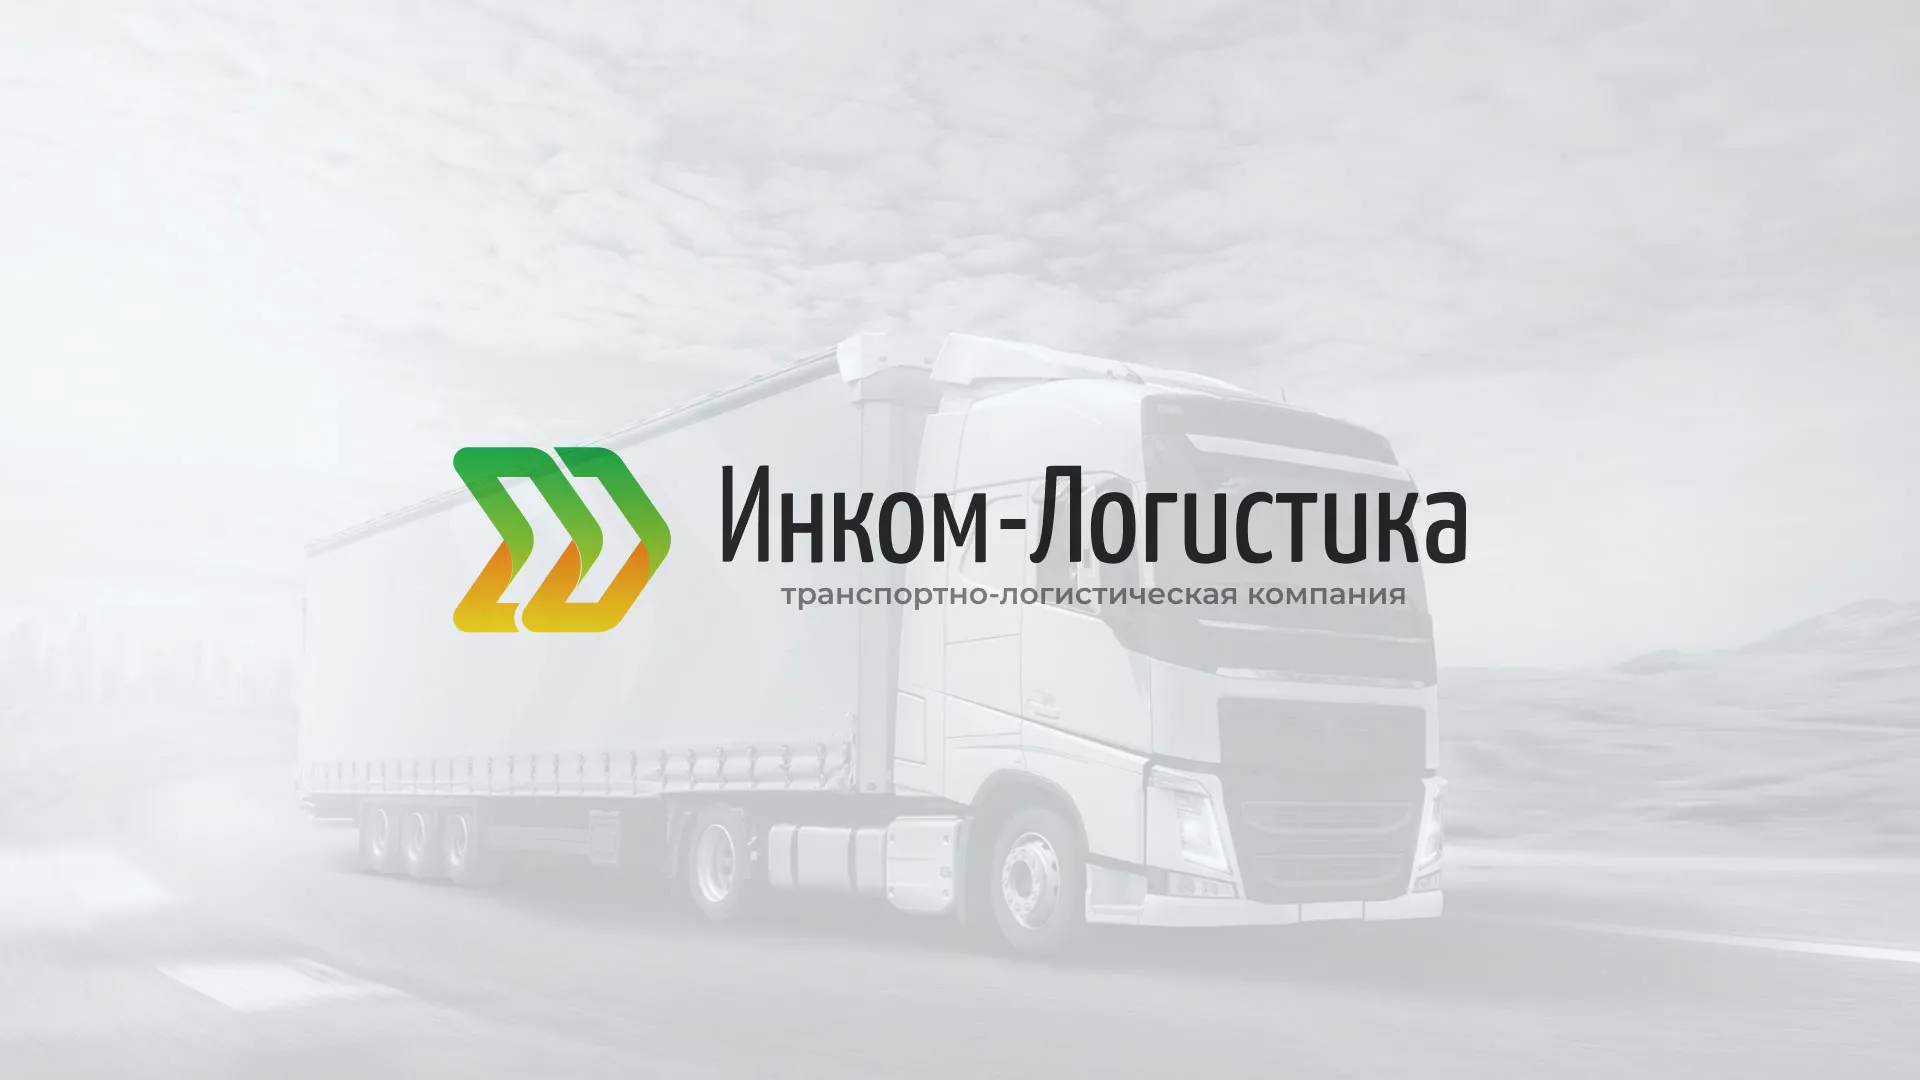 Разработка логотипа и сайта компании «Инком-Логистика» в Рыбинске